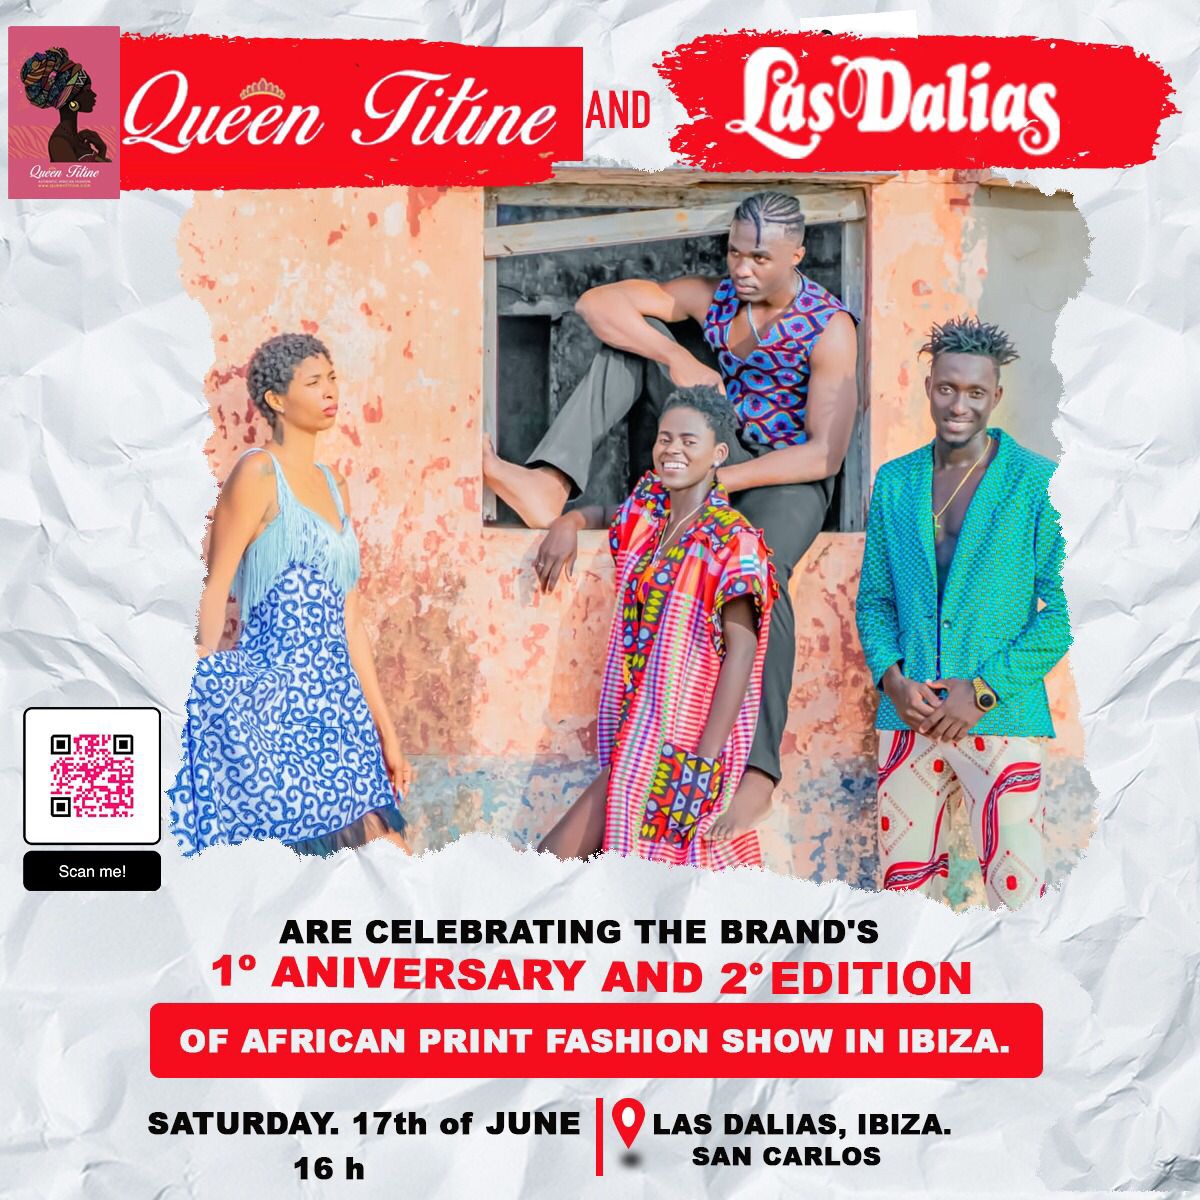 Queen Titine celebra en Las Dalias el primer aniversario de la marca con un gran Fashion show 